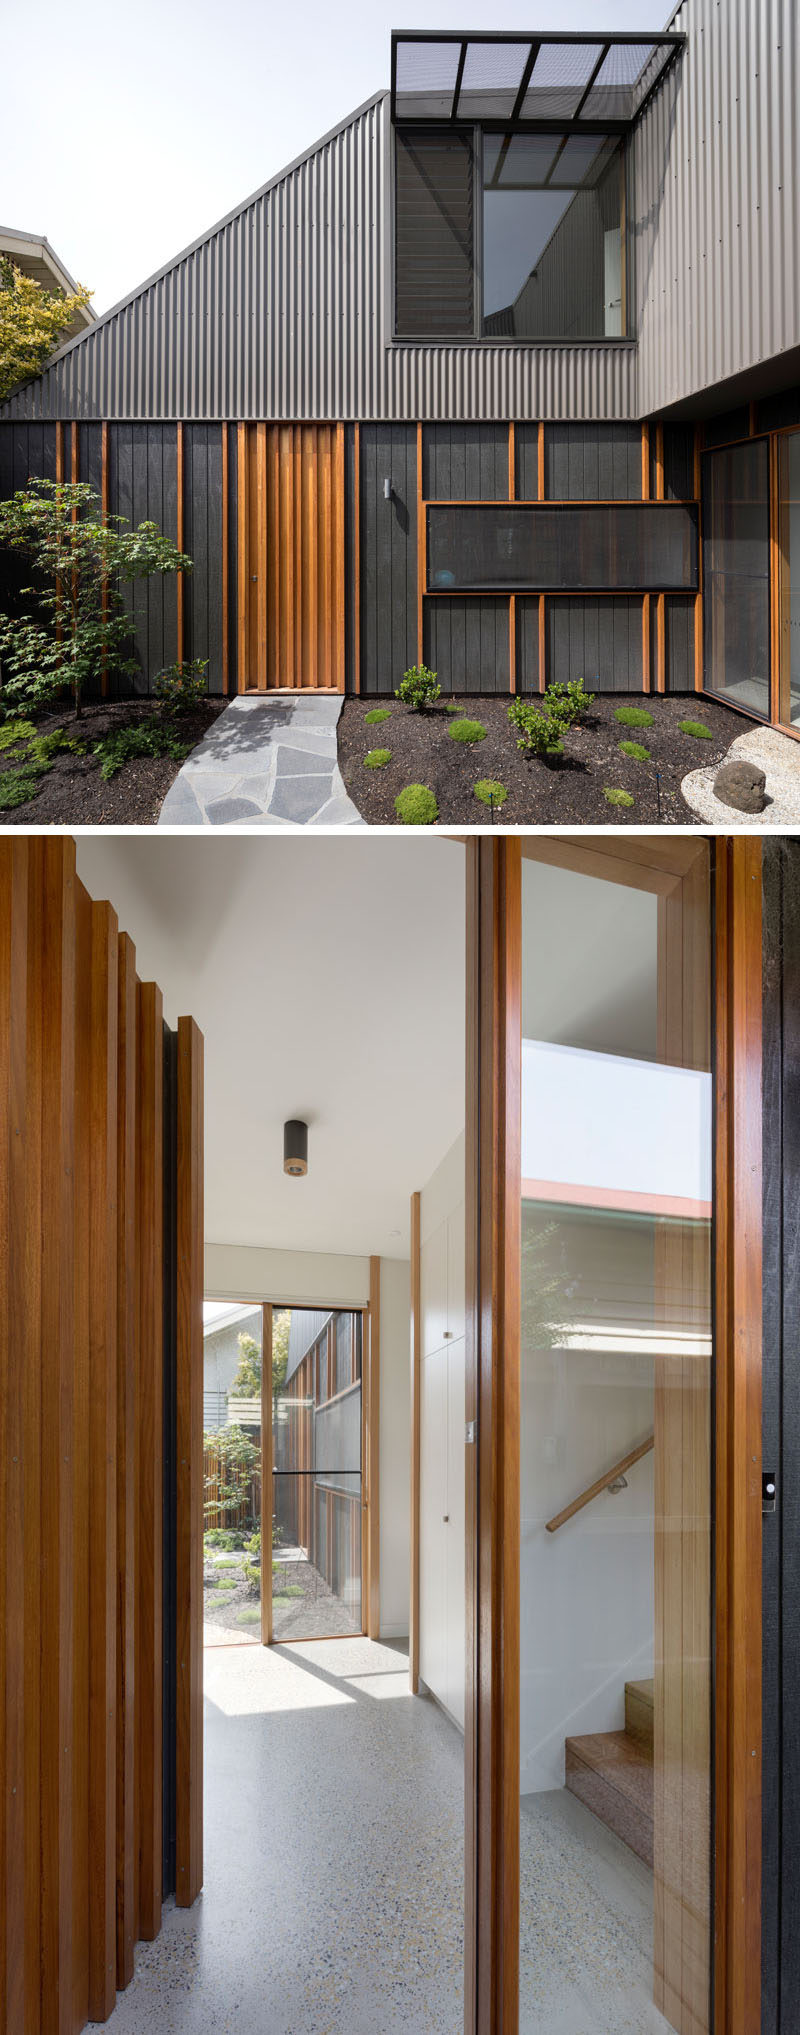 В этом современном доме деревянные рейки, которые скрывают стыки в облицовке, добавляют текстуру фасаду и позволяют входной двери гармонировать с внешним видом. #ModernHouse #WoodFrontDoor #HouseDesign # Архитектура